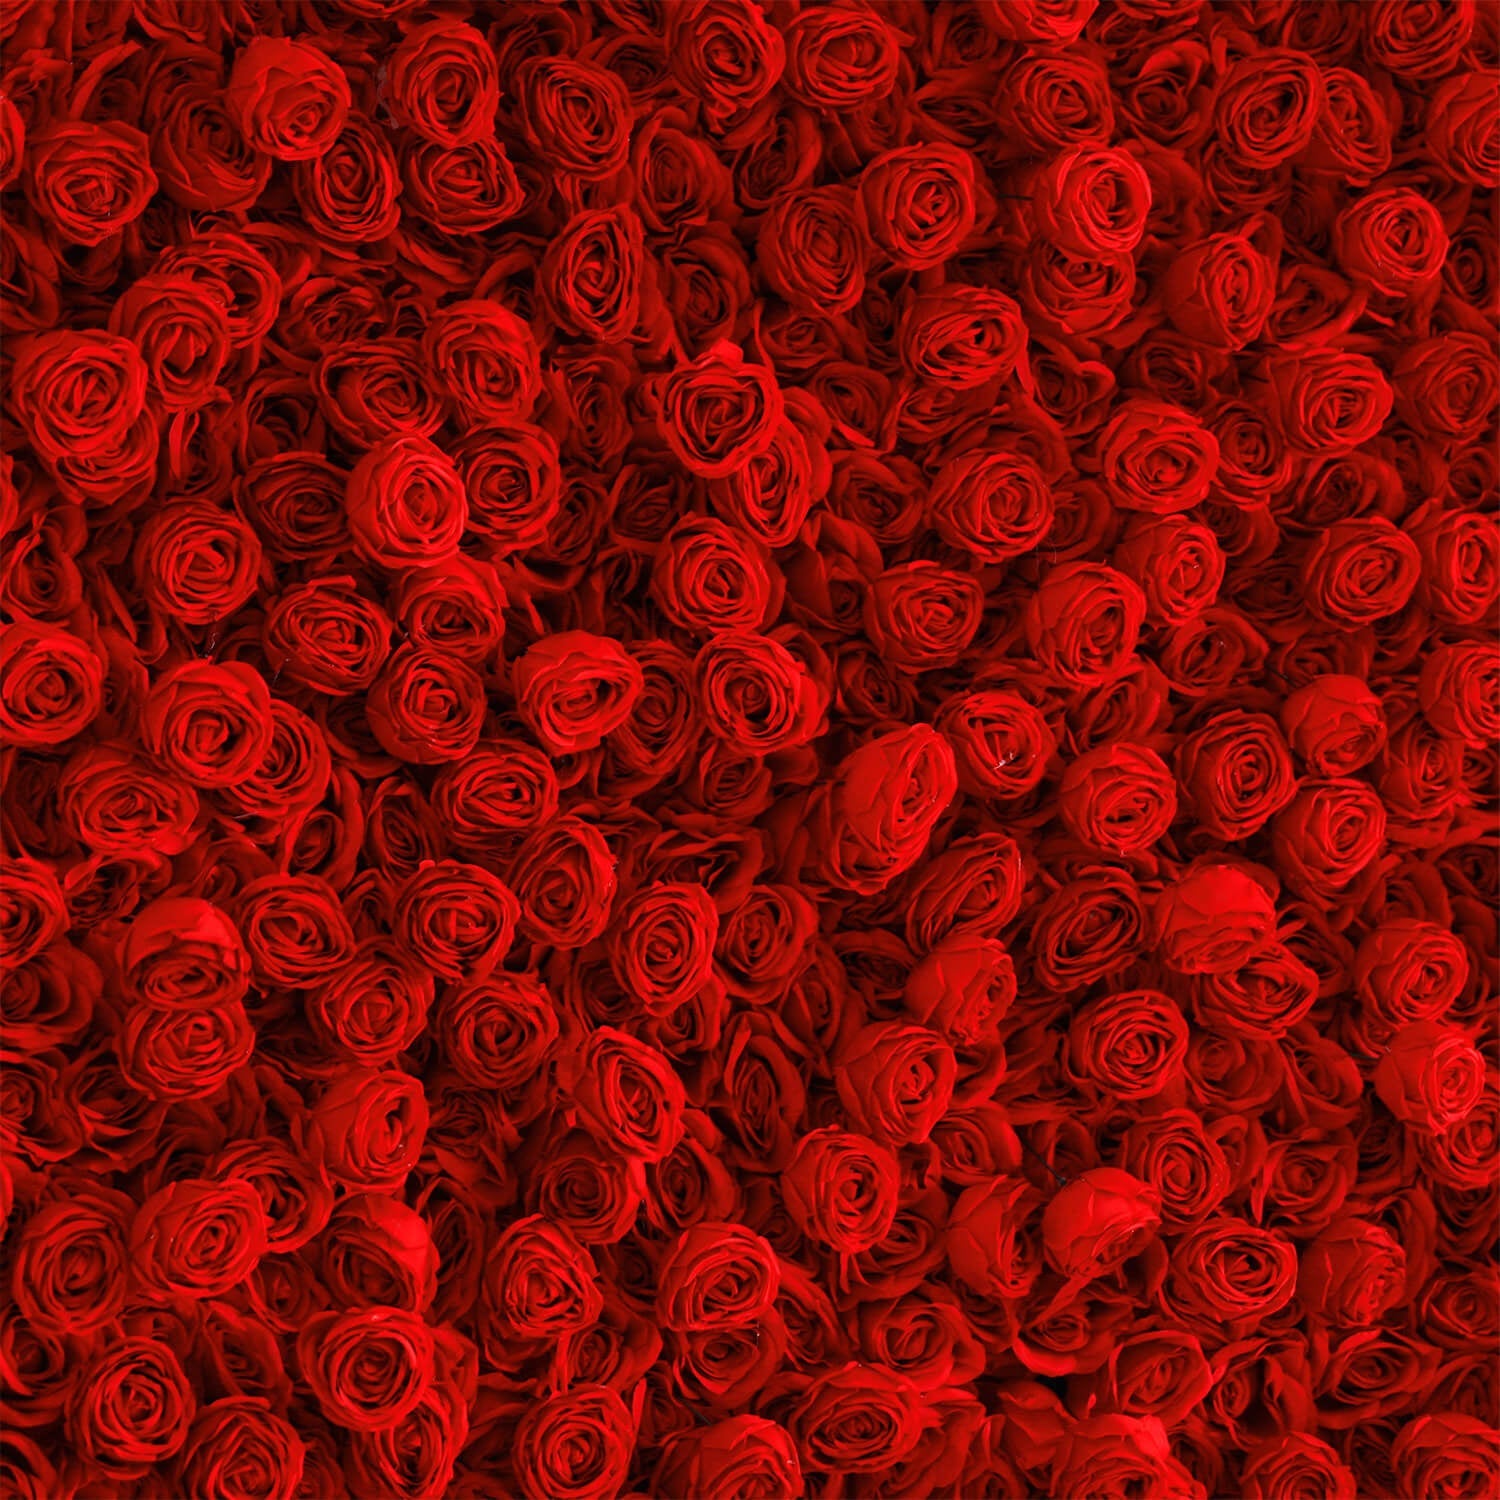 Flowerva Luxurious Flower Ball Rose Hydrangea Wedding Wall Decor